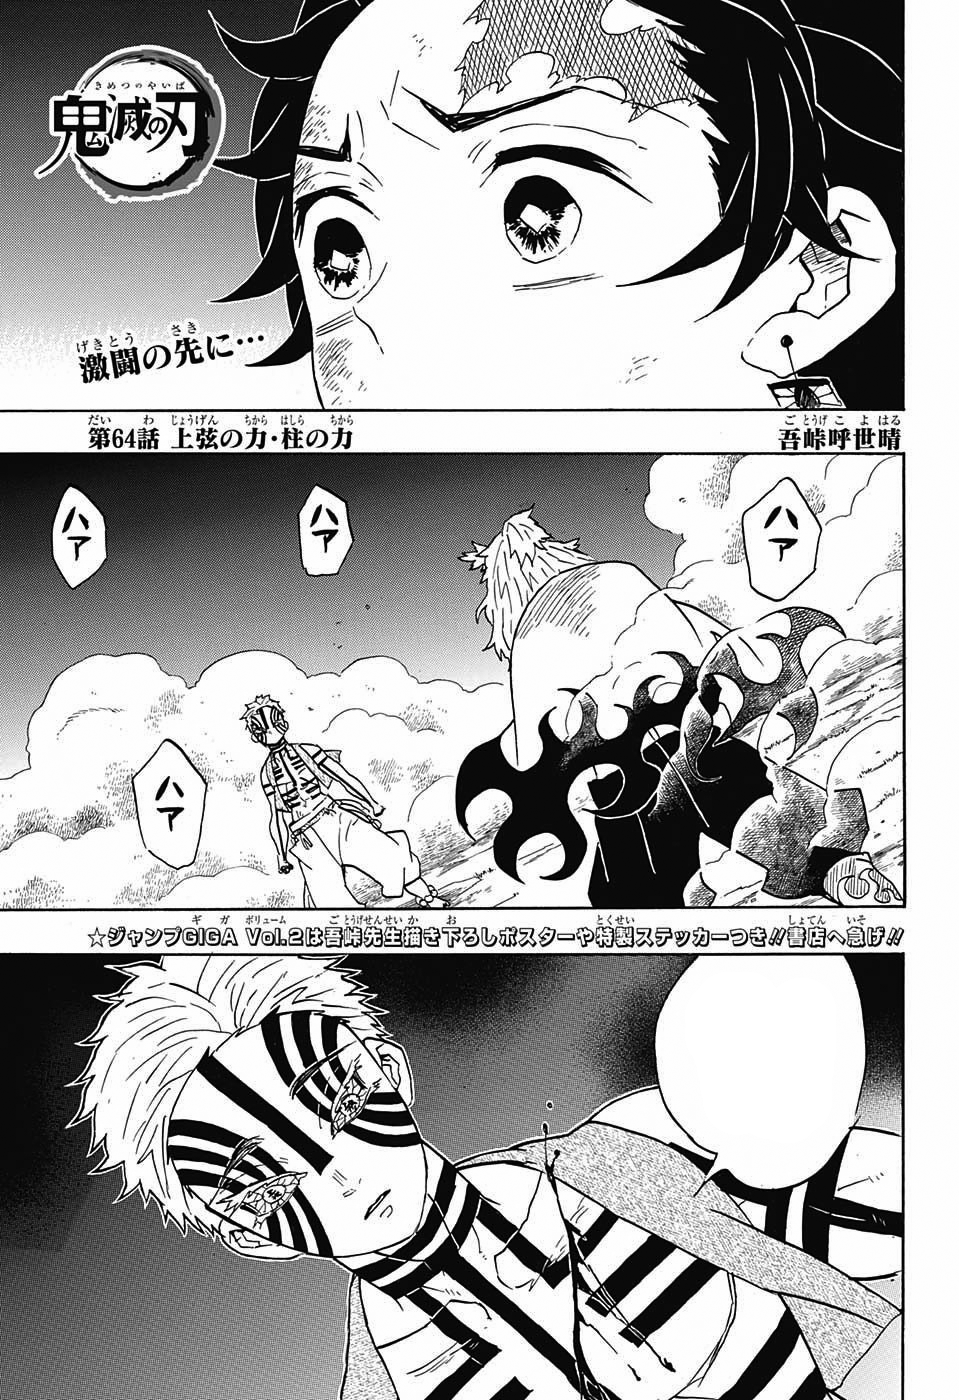 Kimetsu No Yaiba SEASON 2 EPISODE 12 ‼️ Manga Chapter 94-95